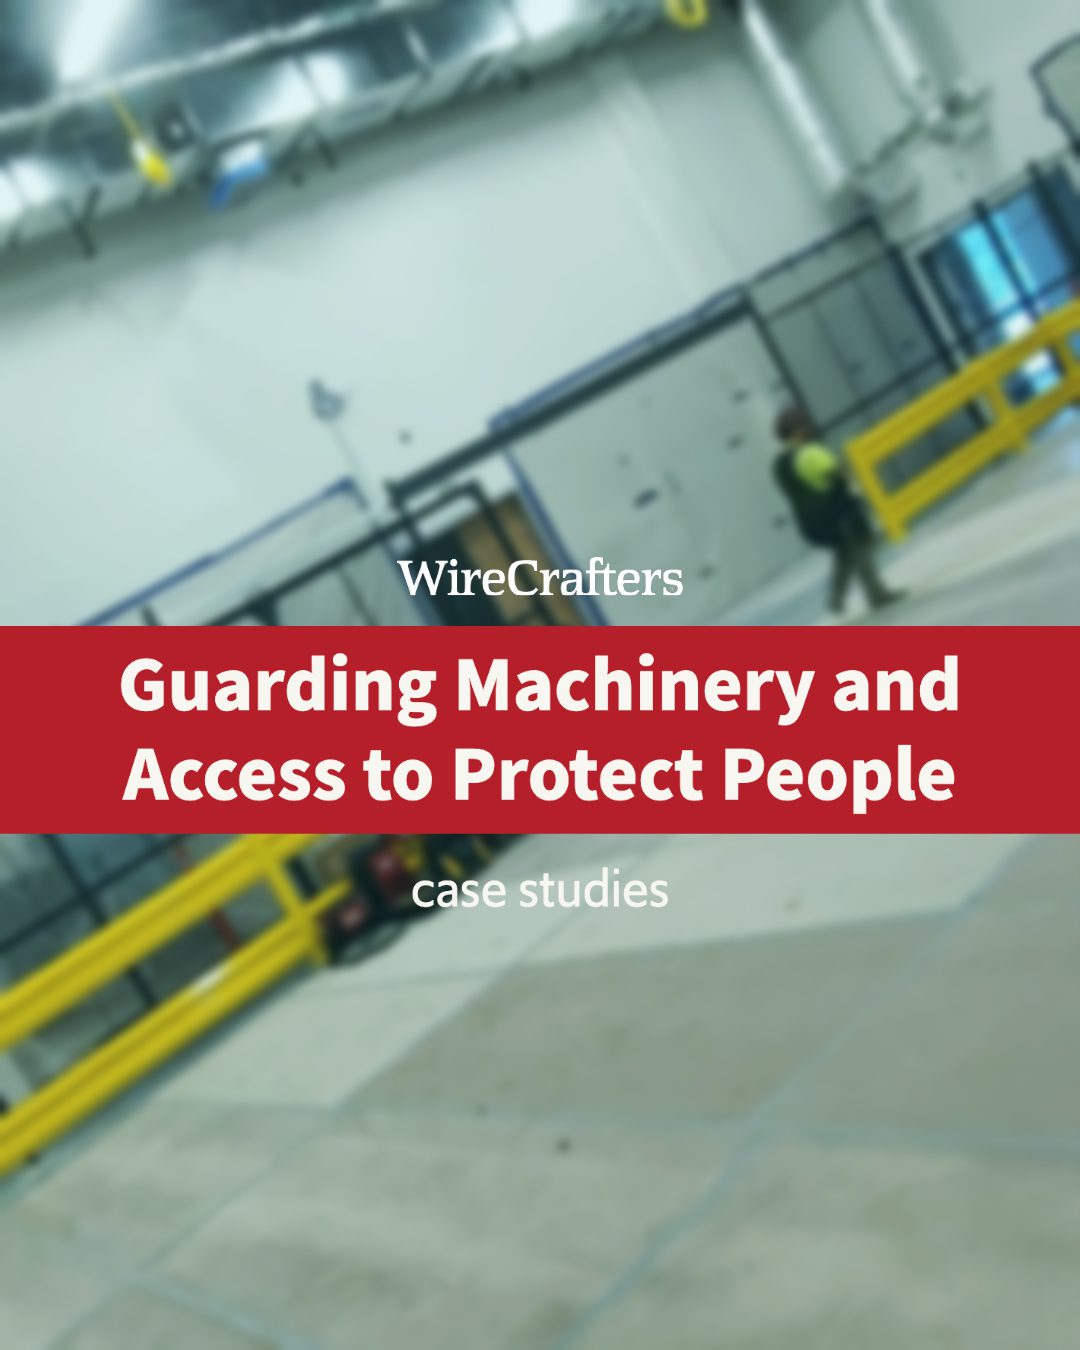 guarding machinery case study thumbnail